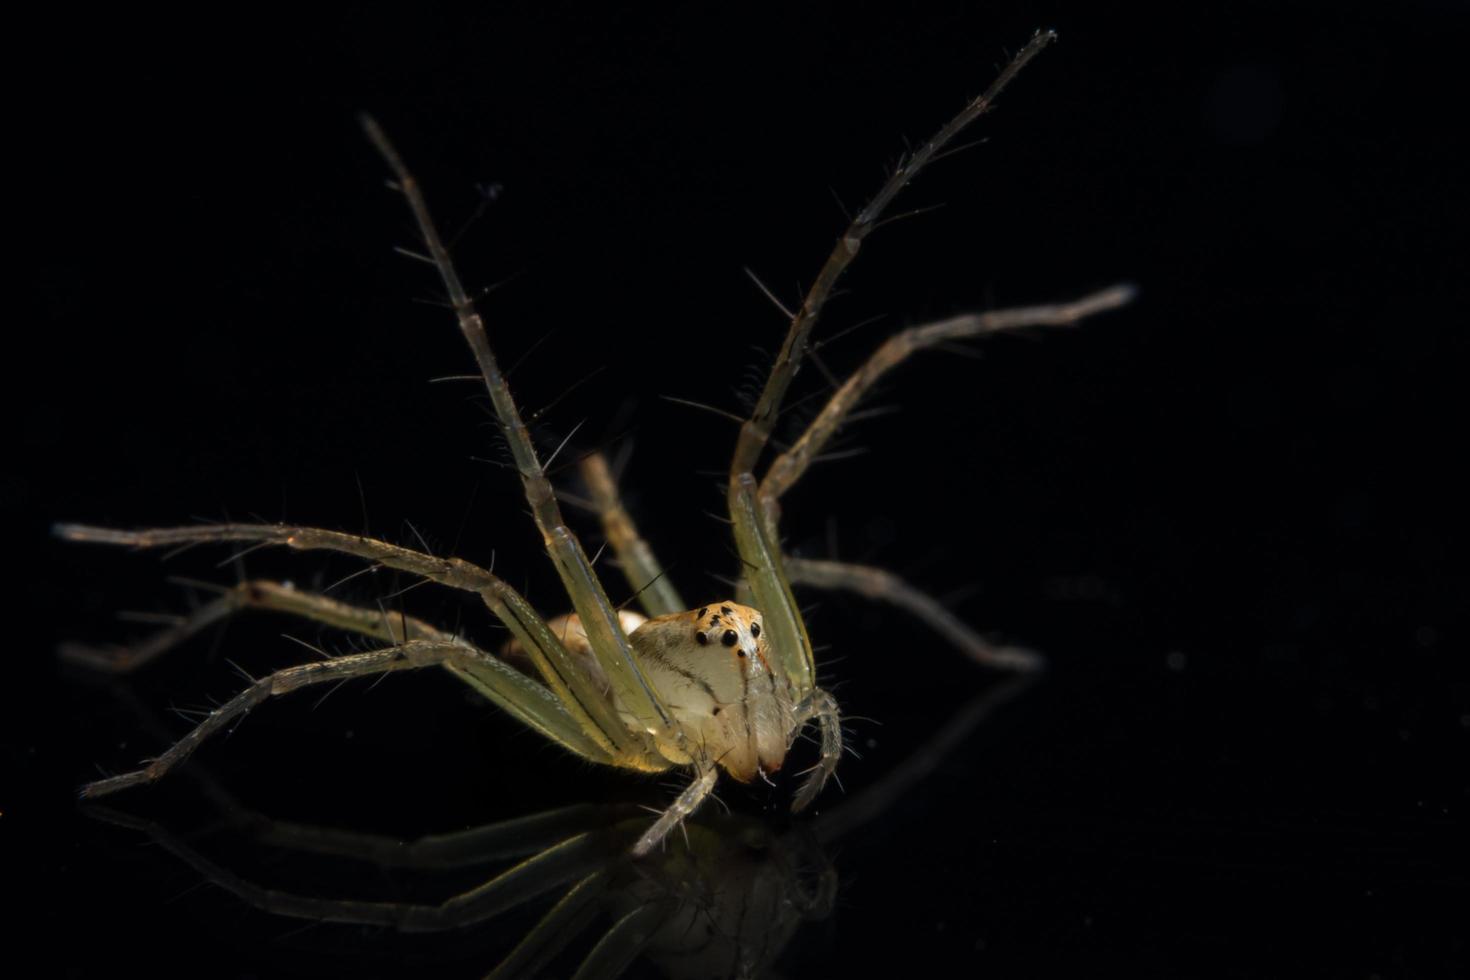 Spider on Black Mirror photo